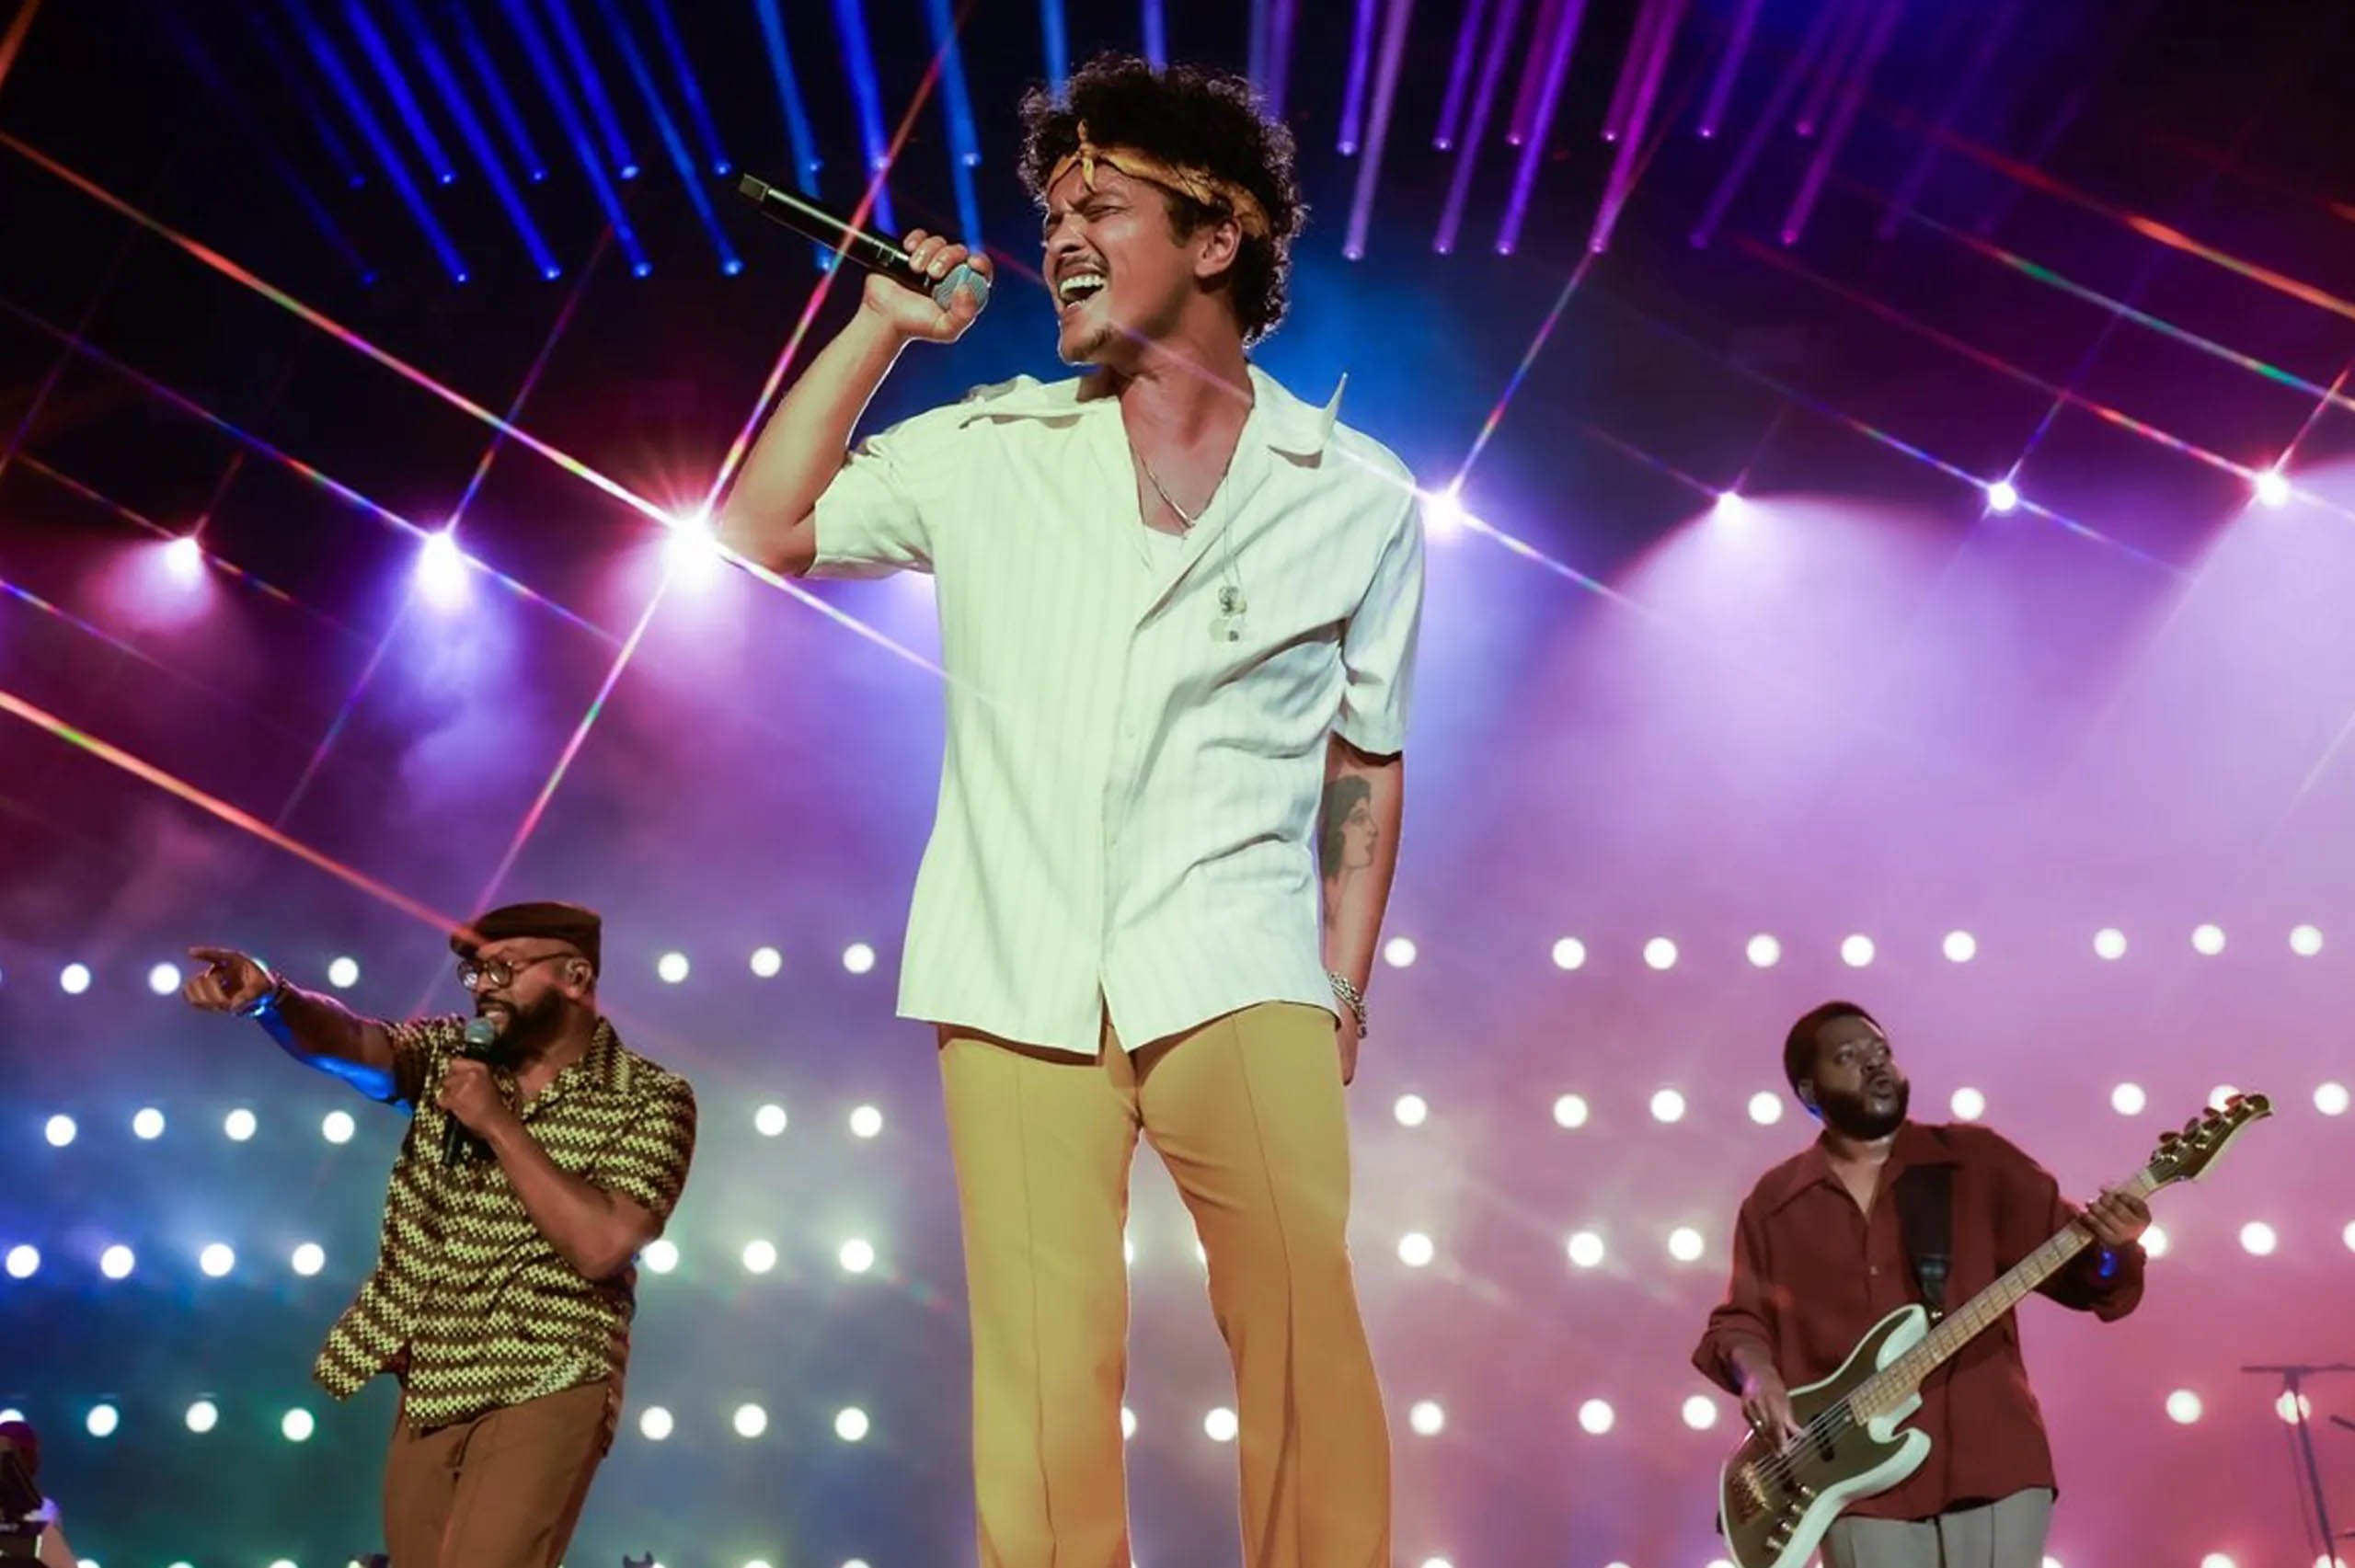 Antes dos shows de Bruno Mars no Brasil, relembre curiosidades sobre o cantor